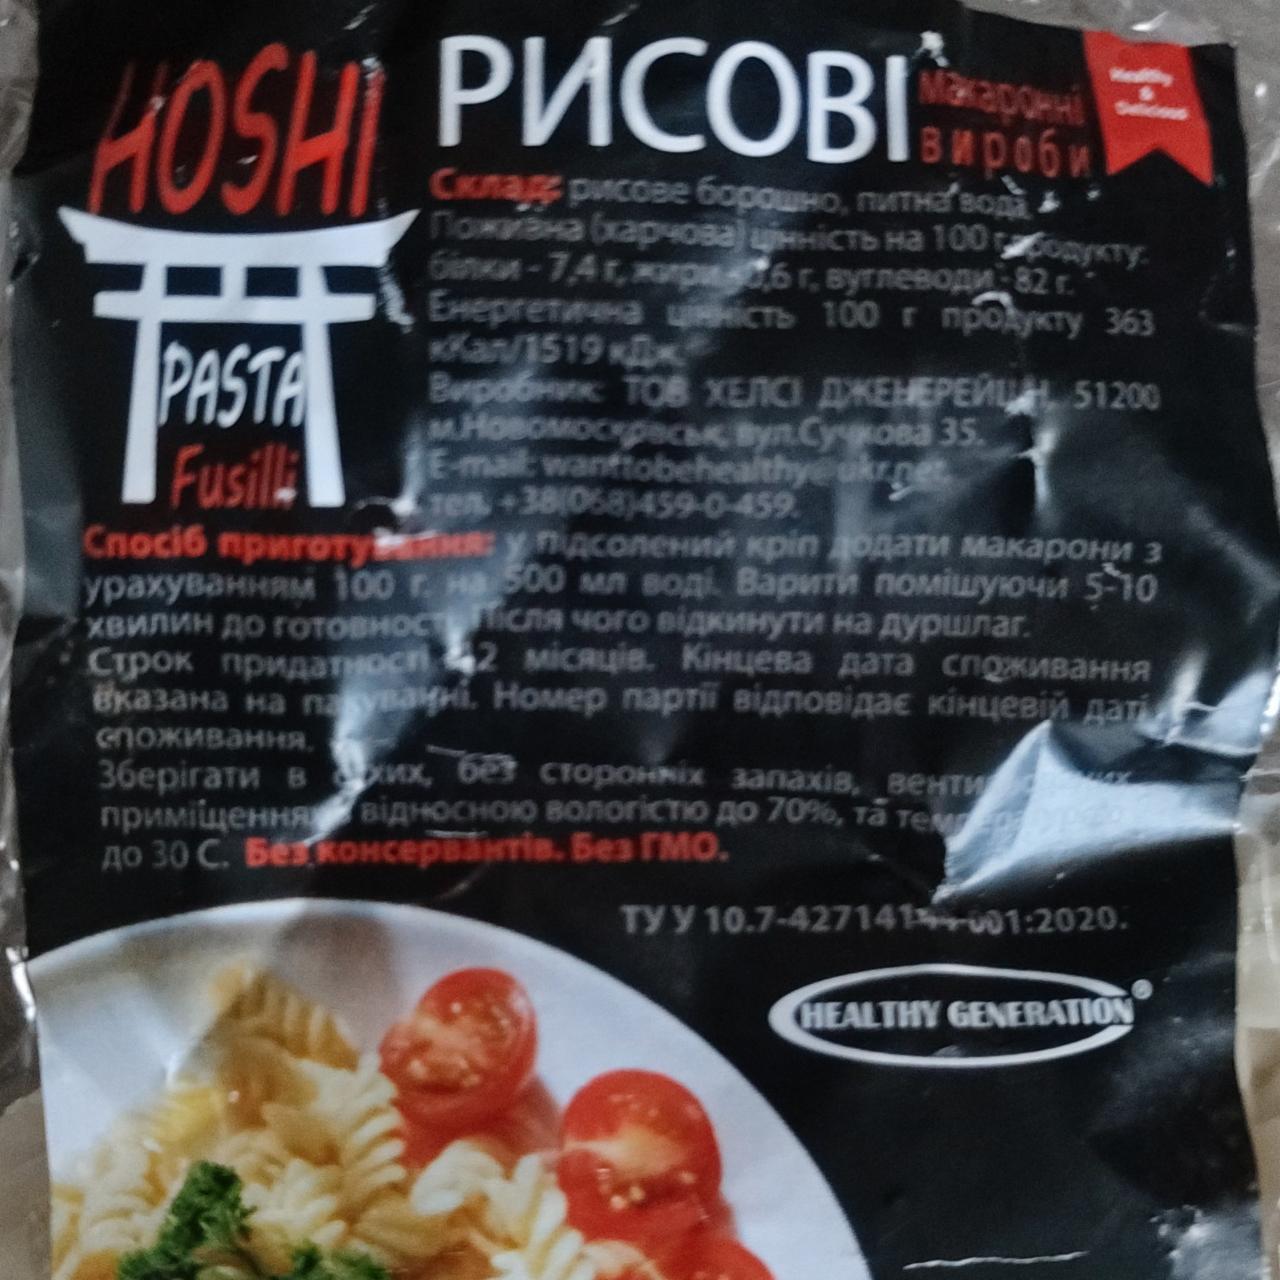 Фото - Макаронні вироби рисові Pasta Fusilli Hoshi Healthy Generation